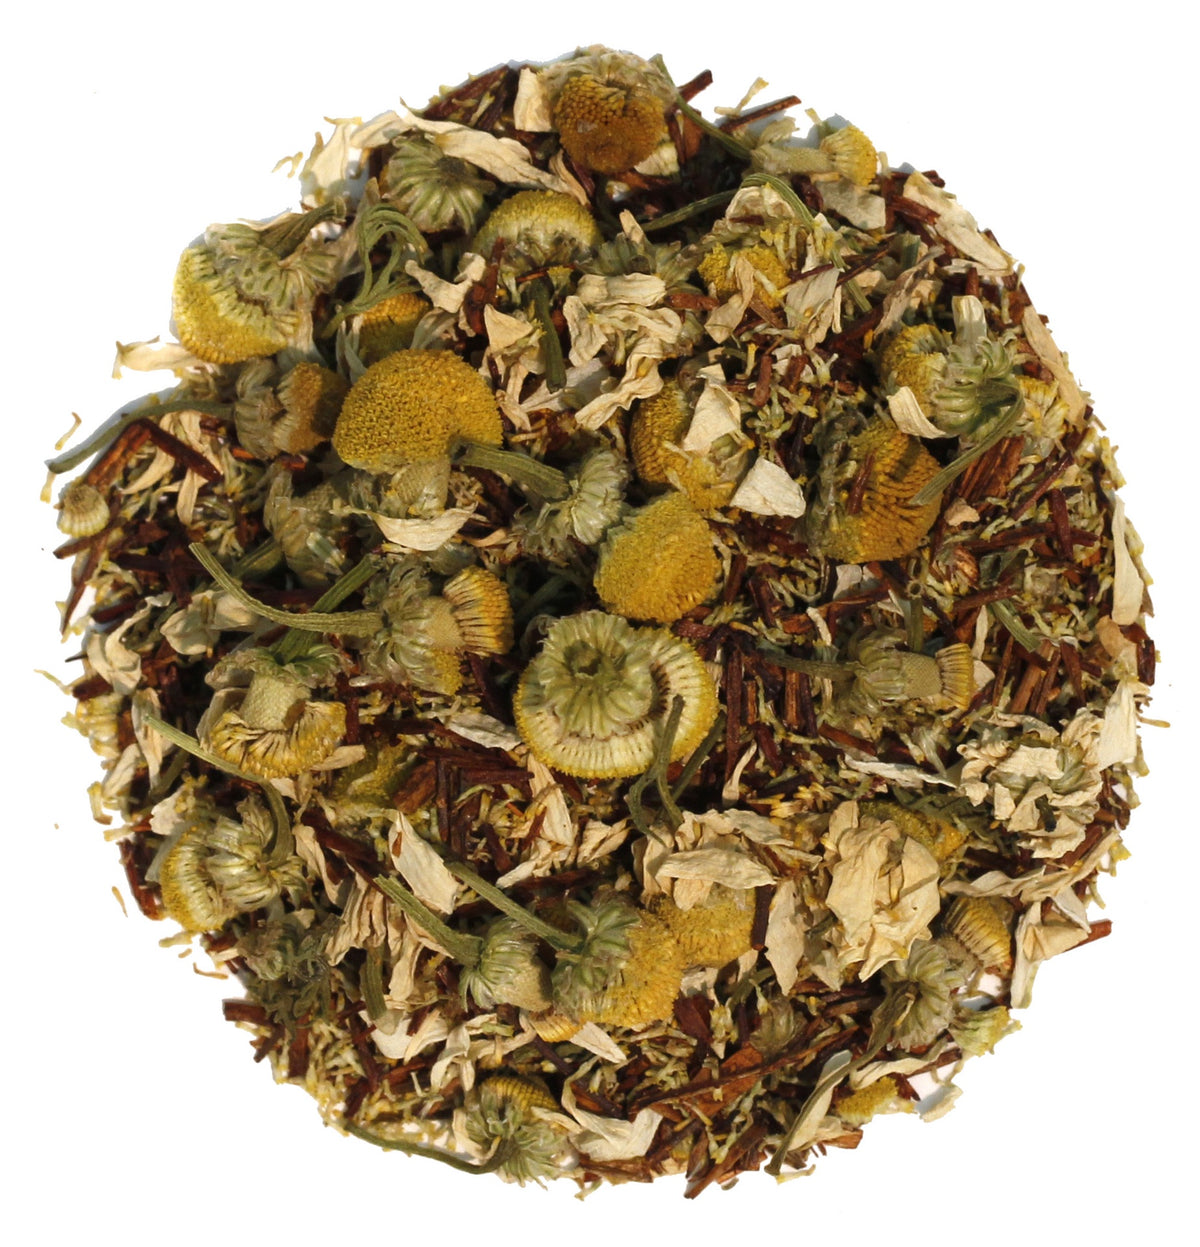 African Sunset - Tisane Herbal Tea